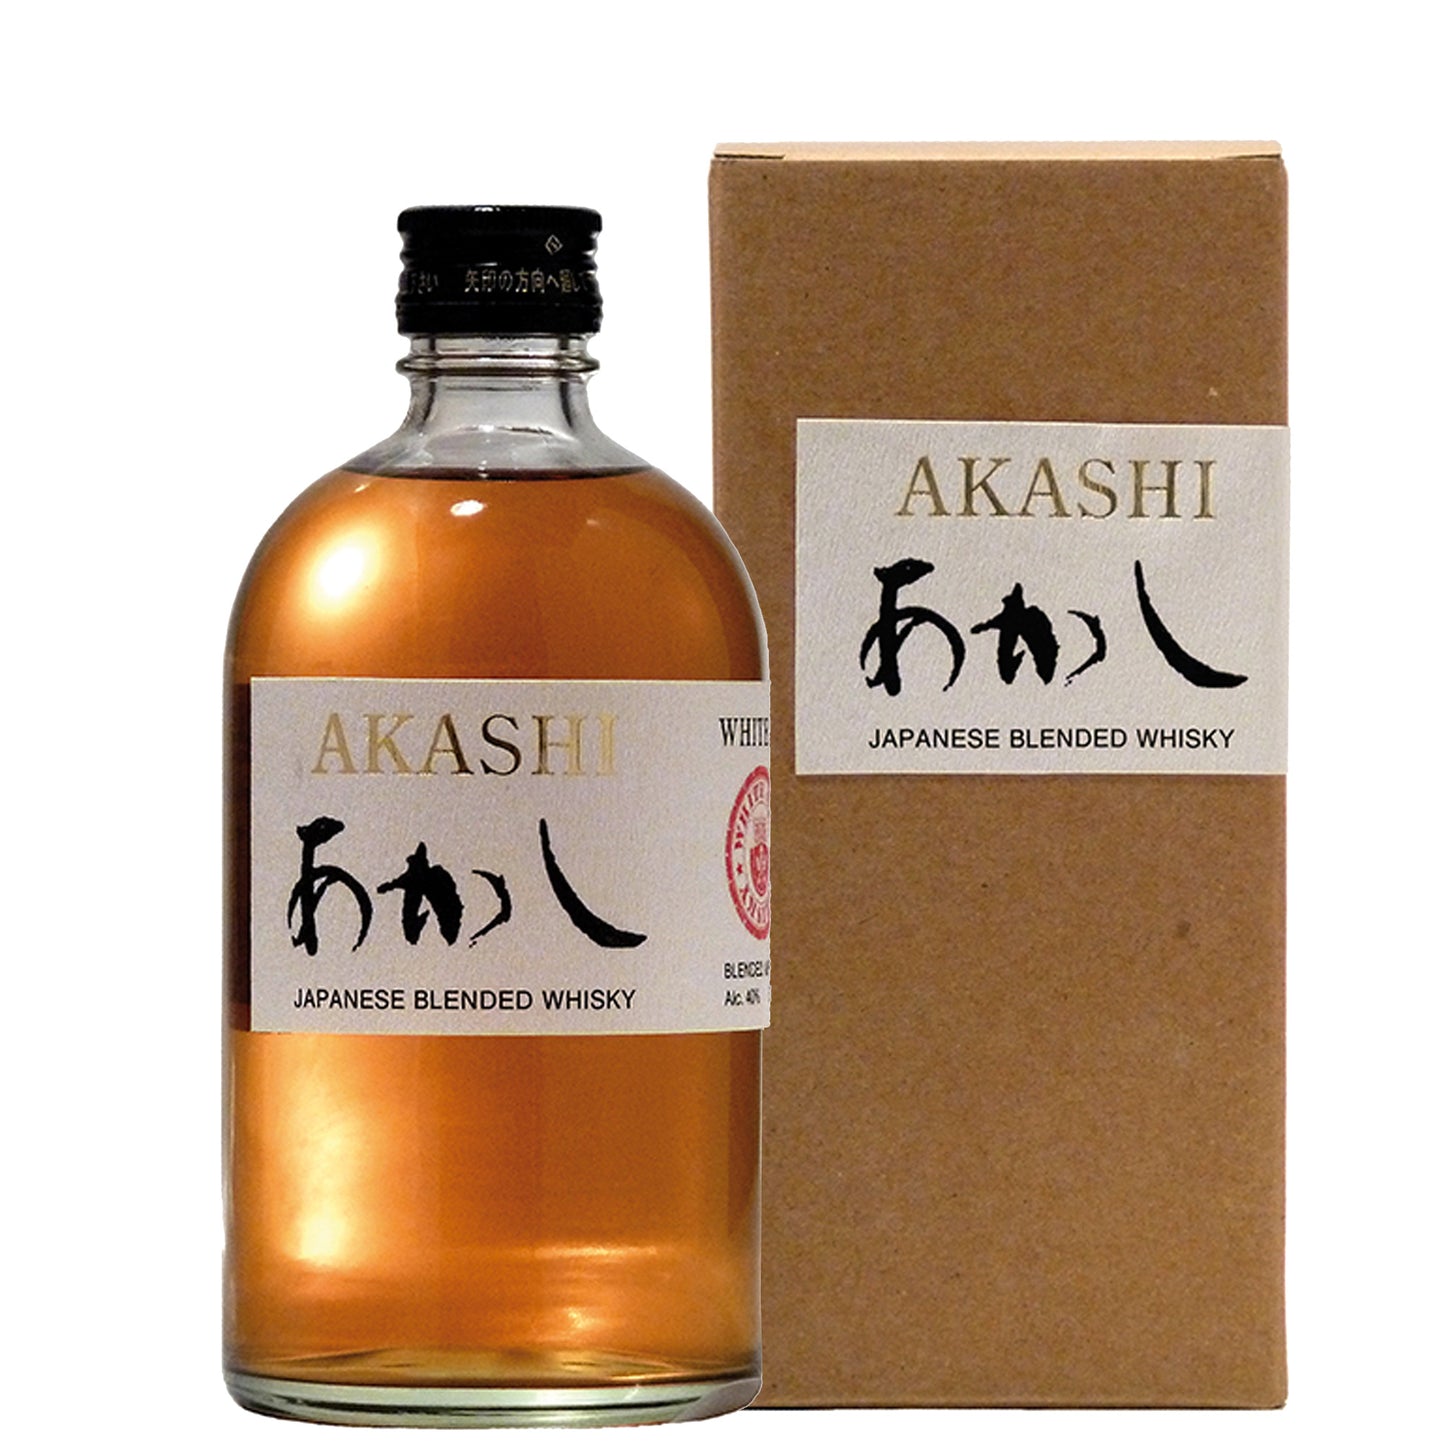 Blended Japanese Whisky Sherry Cask Finish “Akashi” - White Oak Distillery (0.5l)